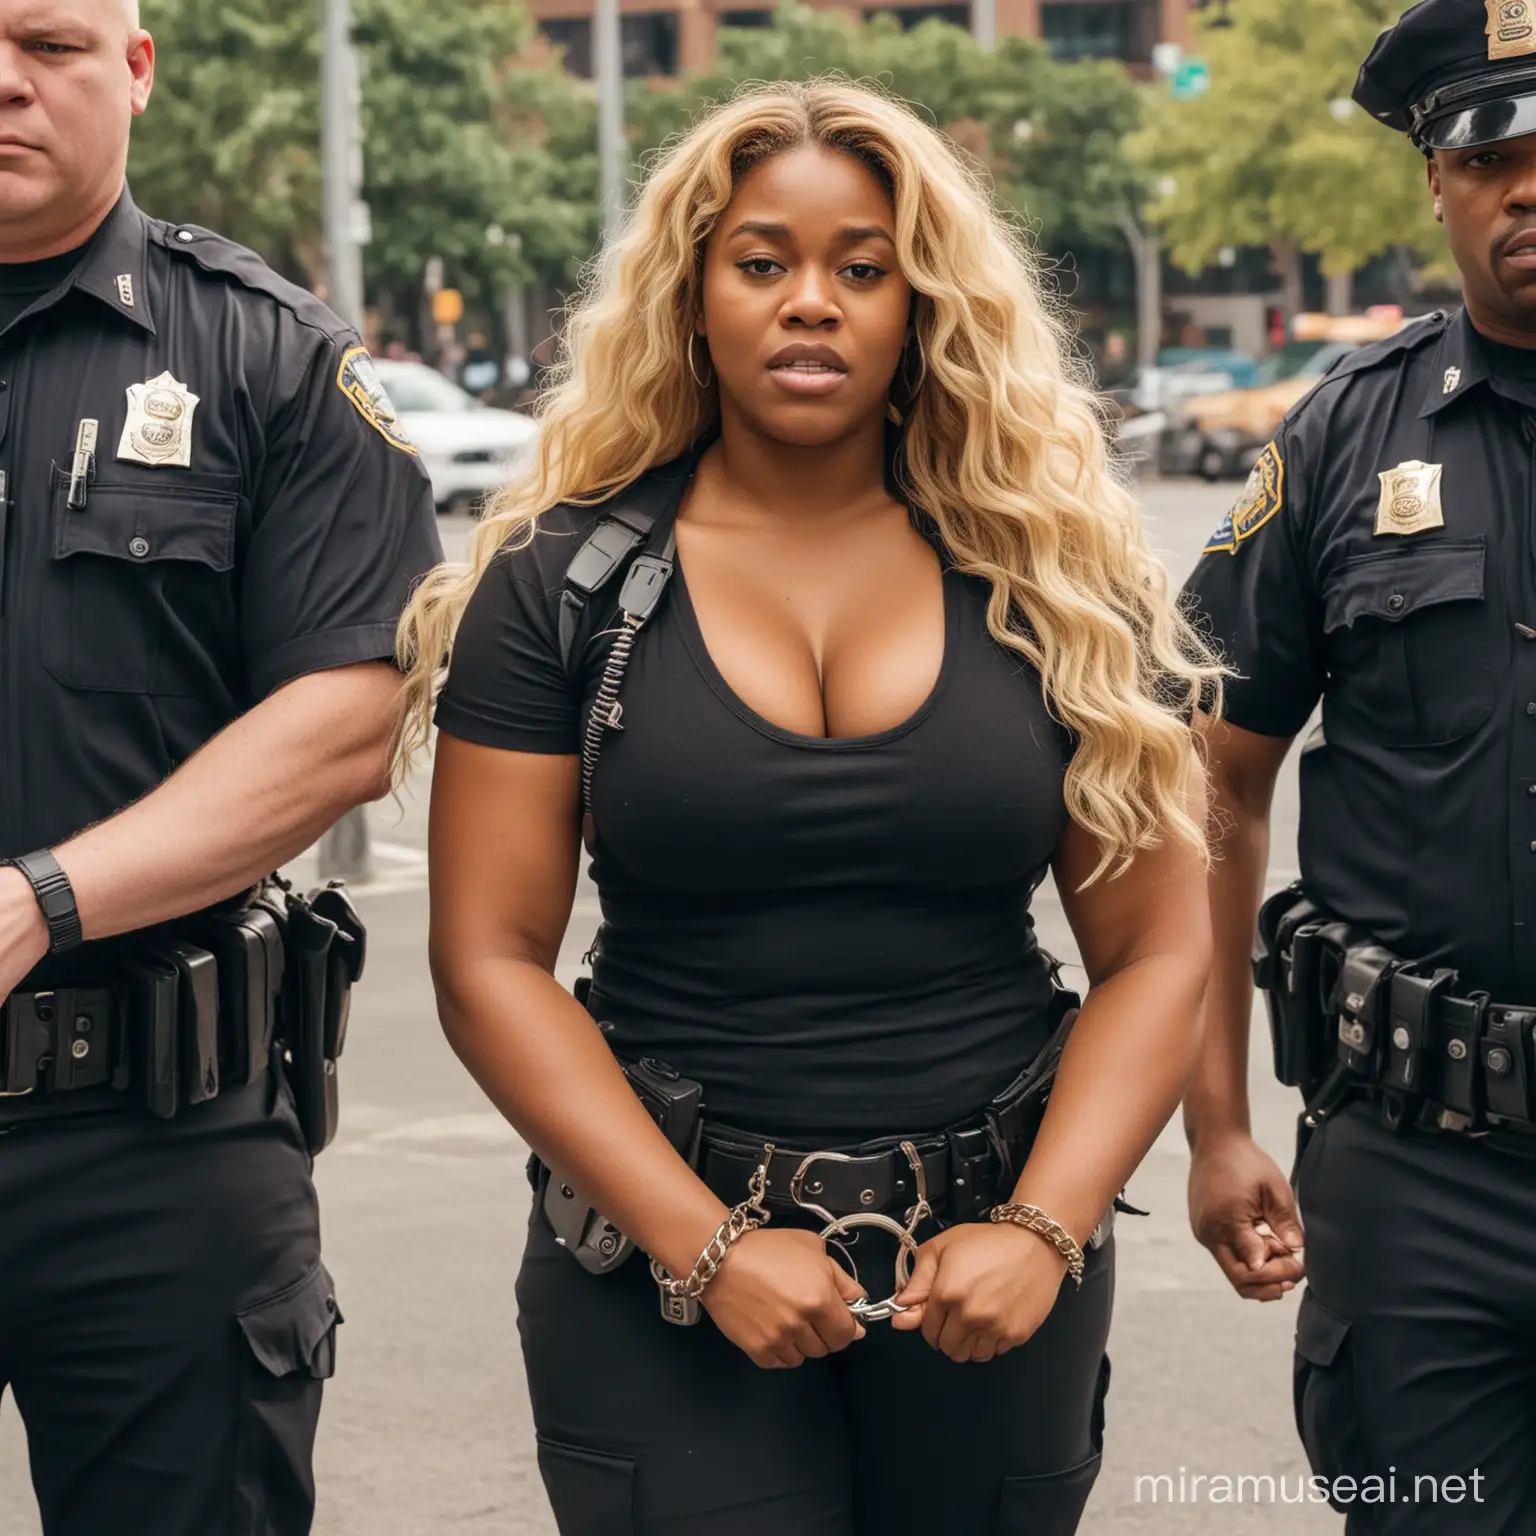 Arrest Scene African American Woman in Casual Wear with Law Enforcement